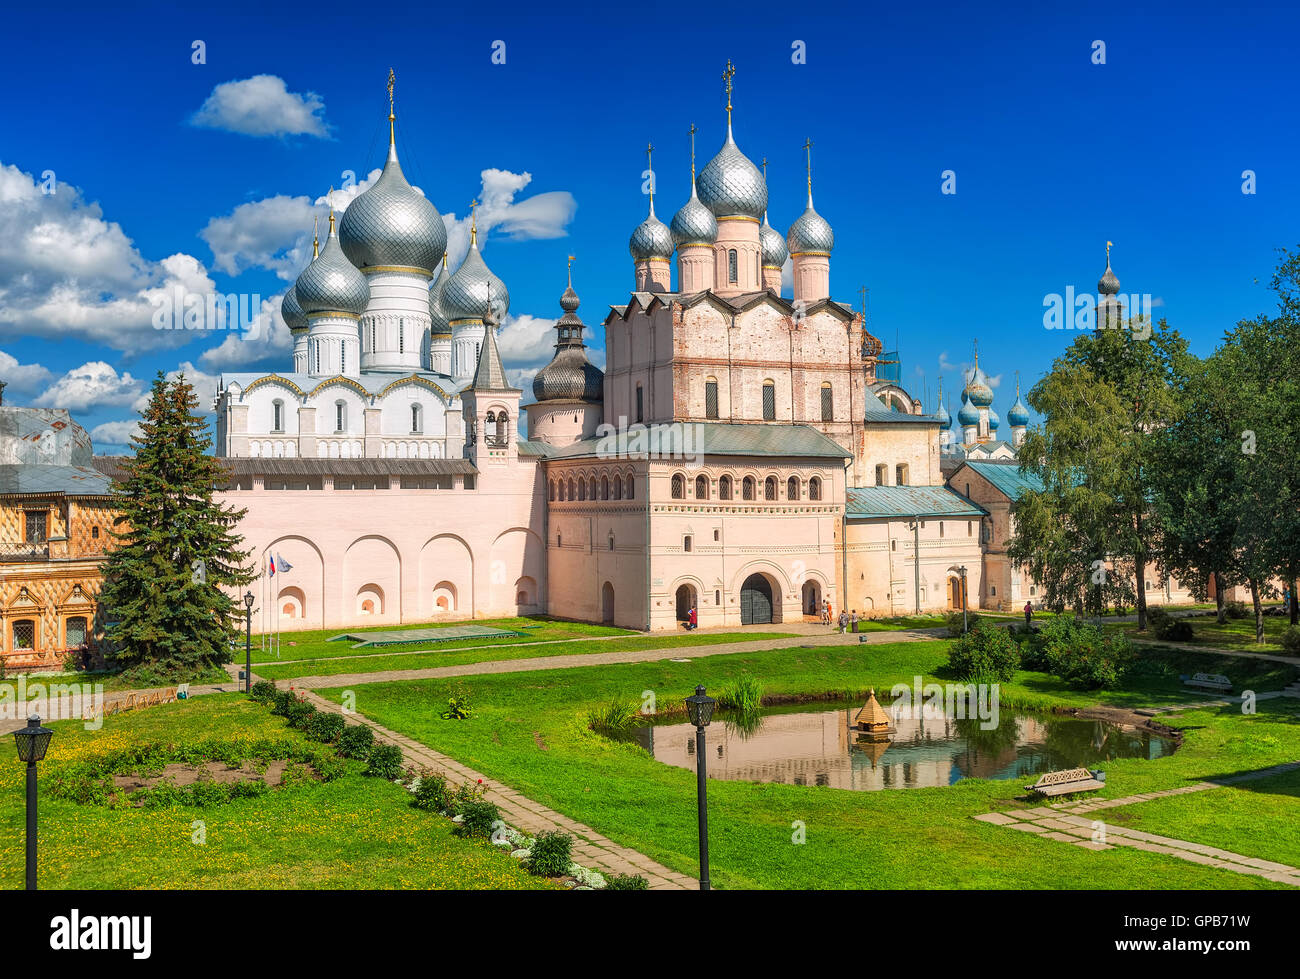 Les cathédrales orthodoxe russe de Rostov Kremlin, anneau d'or, Russie Banque D'Images